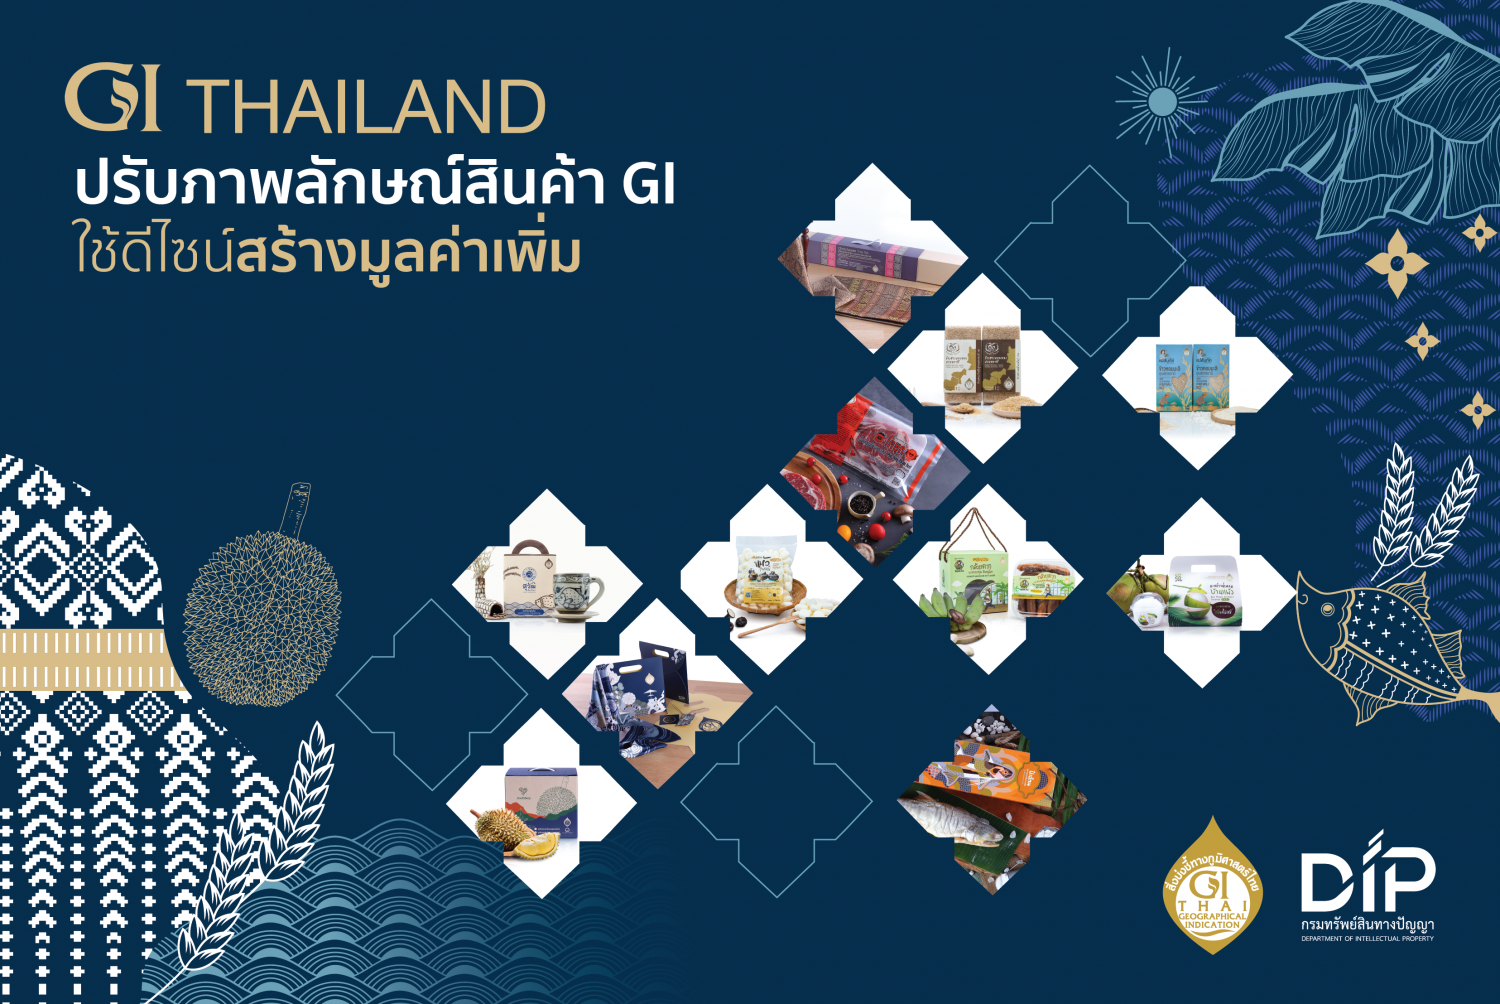 (Thailand) GI Thailand ปรับภาพลักษณ์สินค้า GI ใช้ดีไซน์เพื่อ “สร้างมูลค่าเพิ่ม”